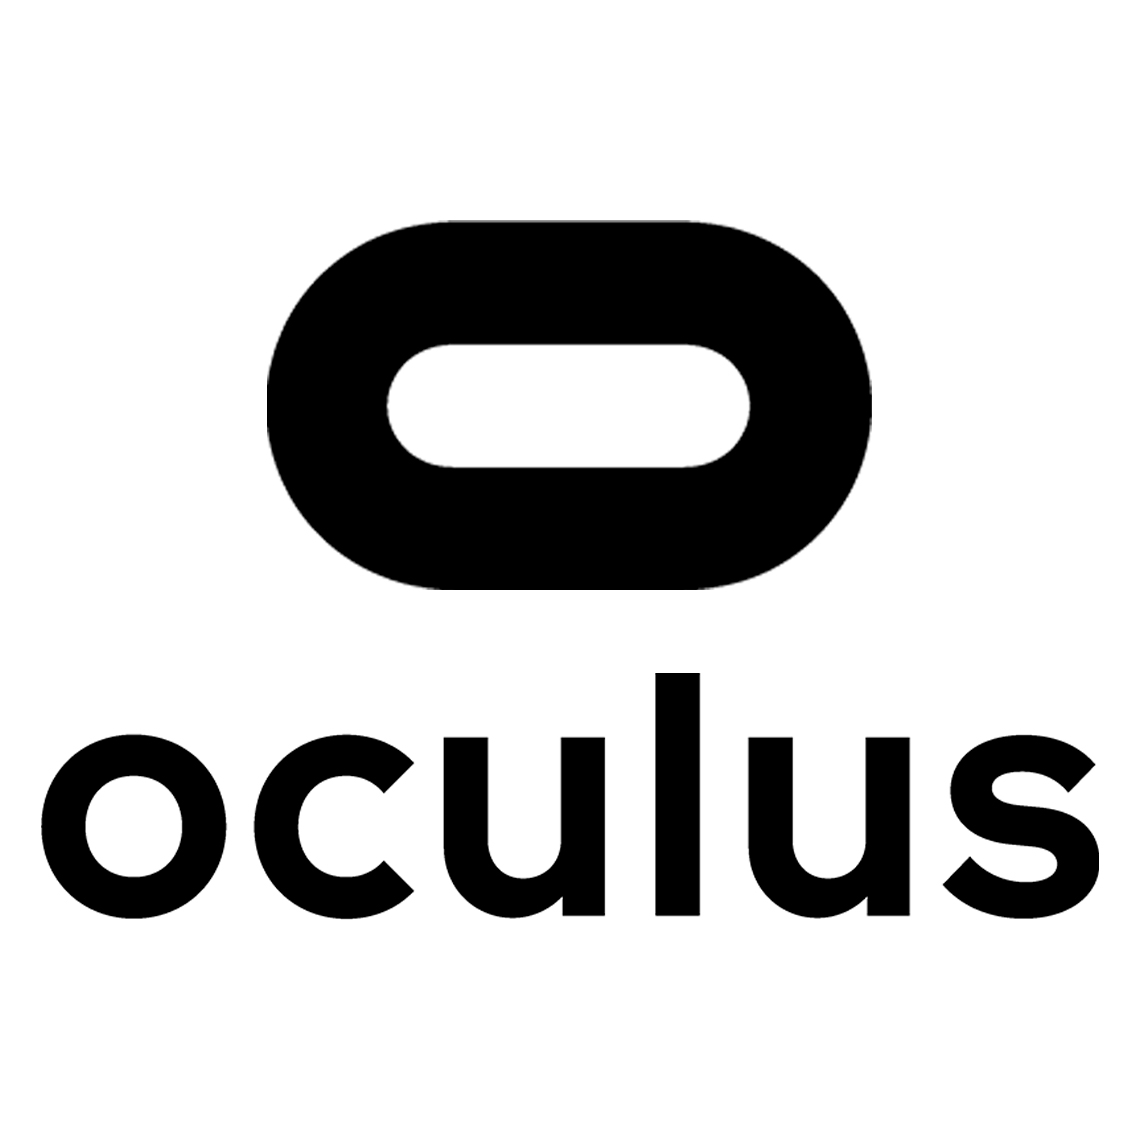 oculus_logo